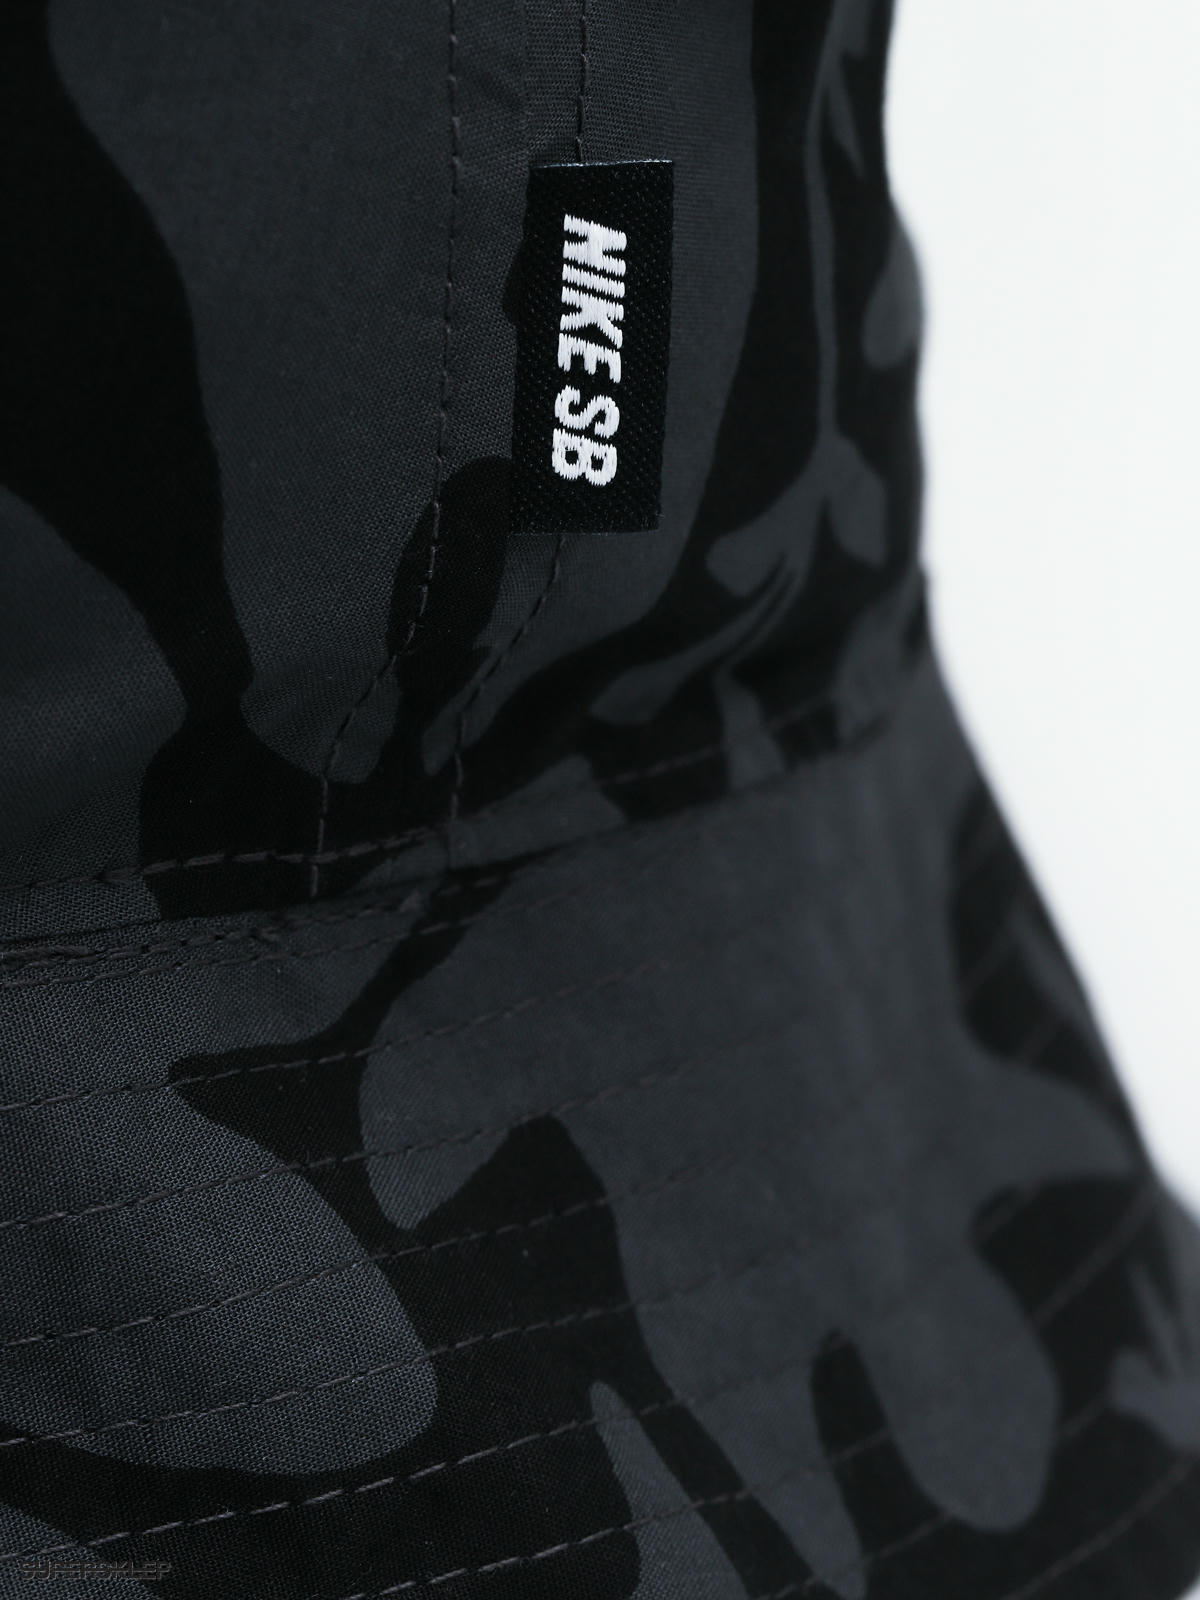 Klobúk Nike SB Bucket Big Leaf Print (black)